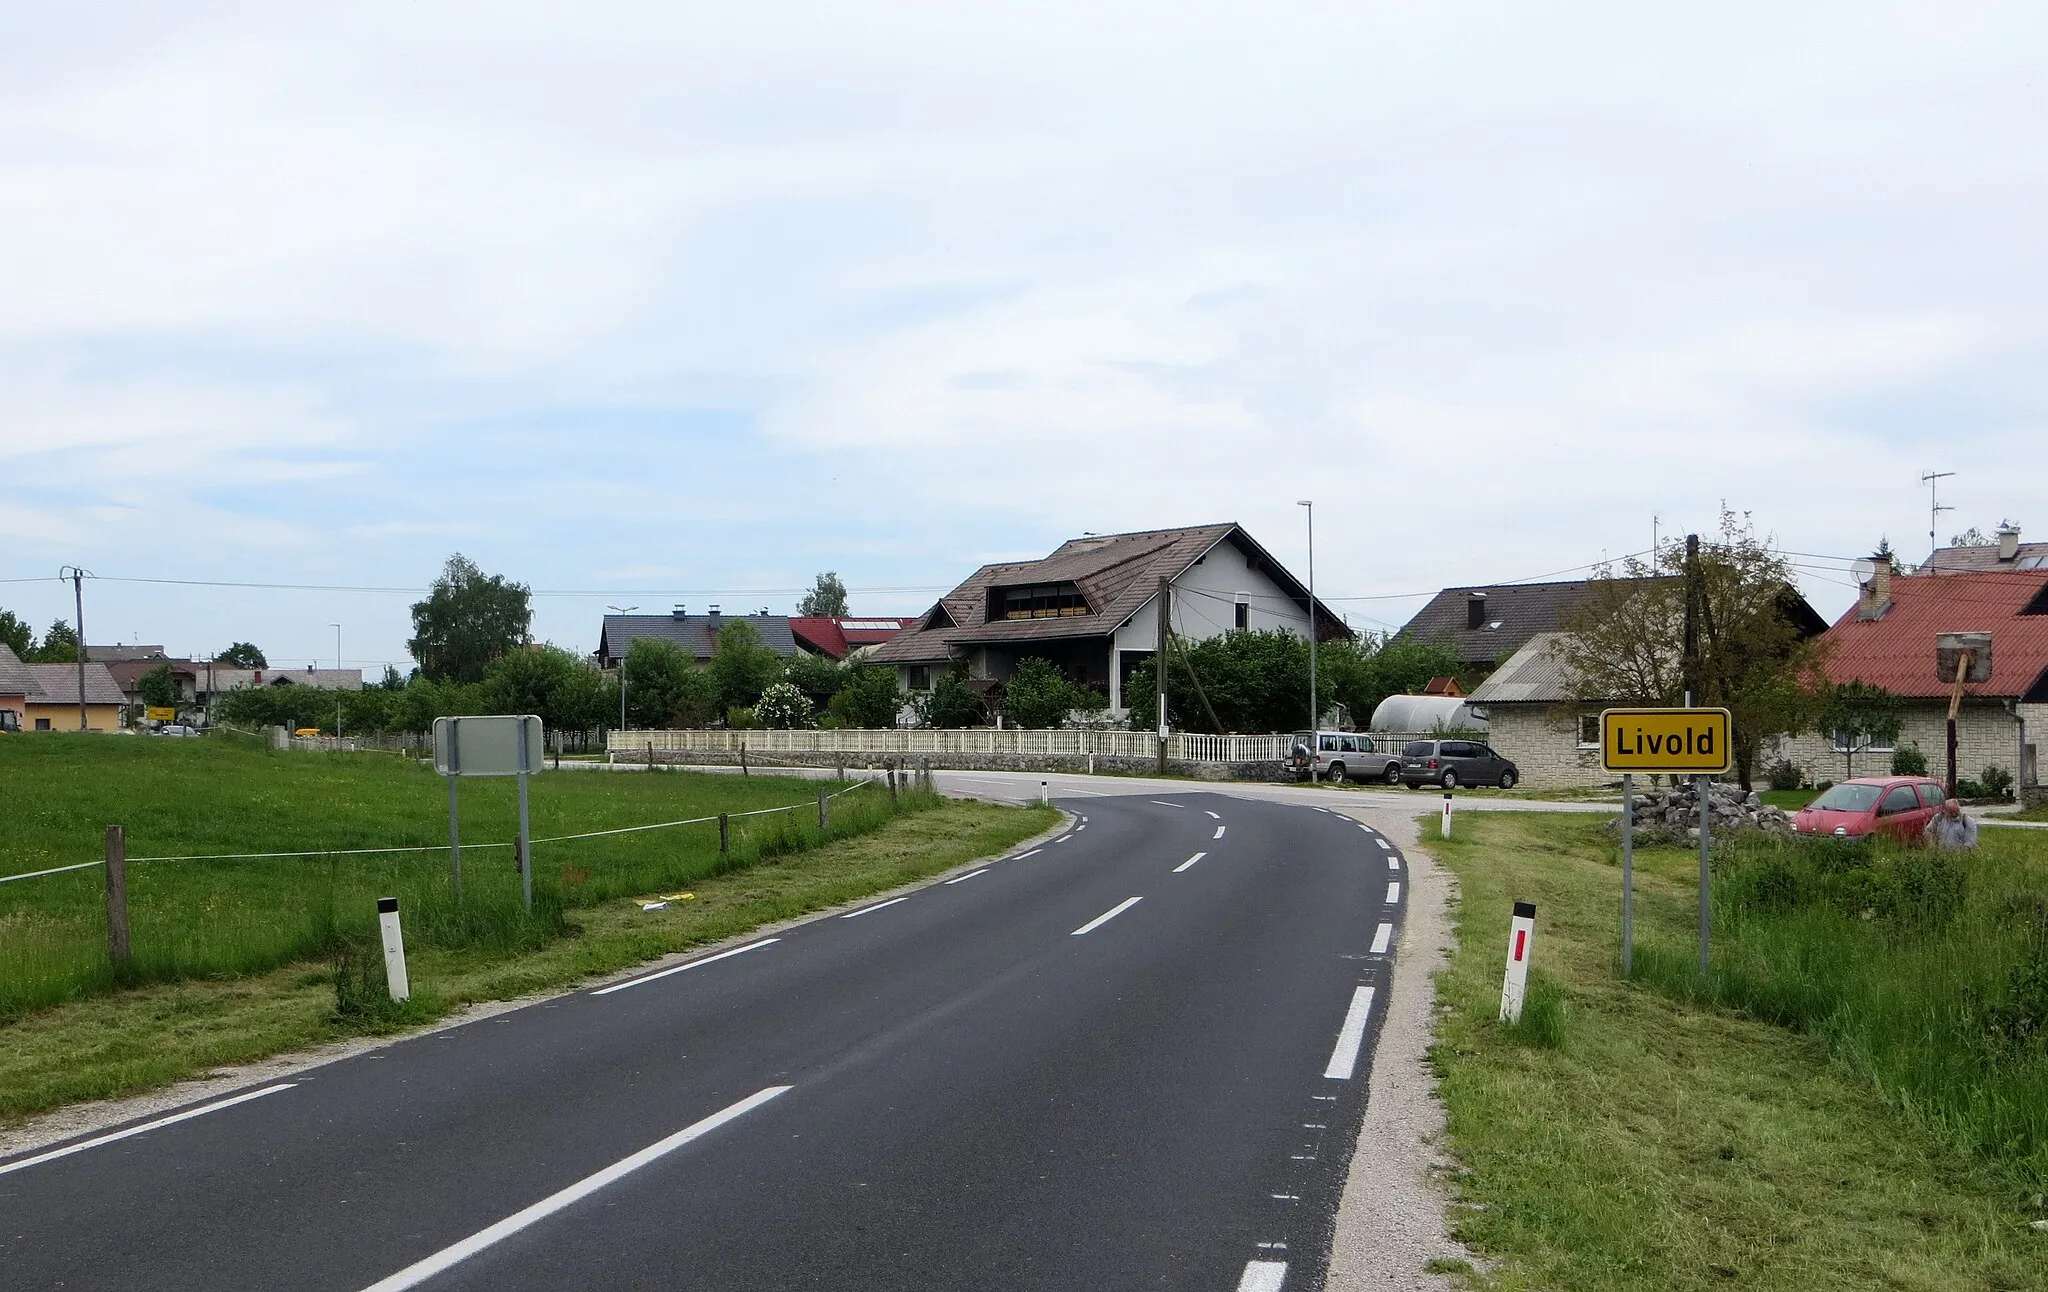 Photo showing: Livold, Municipality of Kočevje, Slovenia